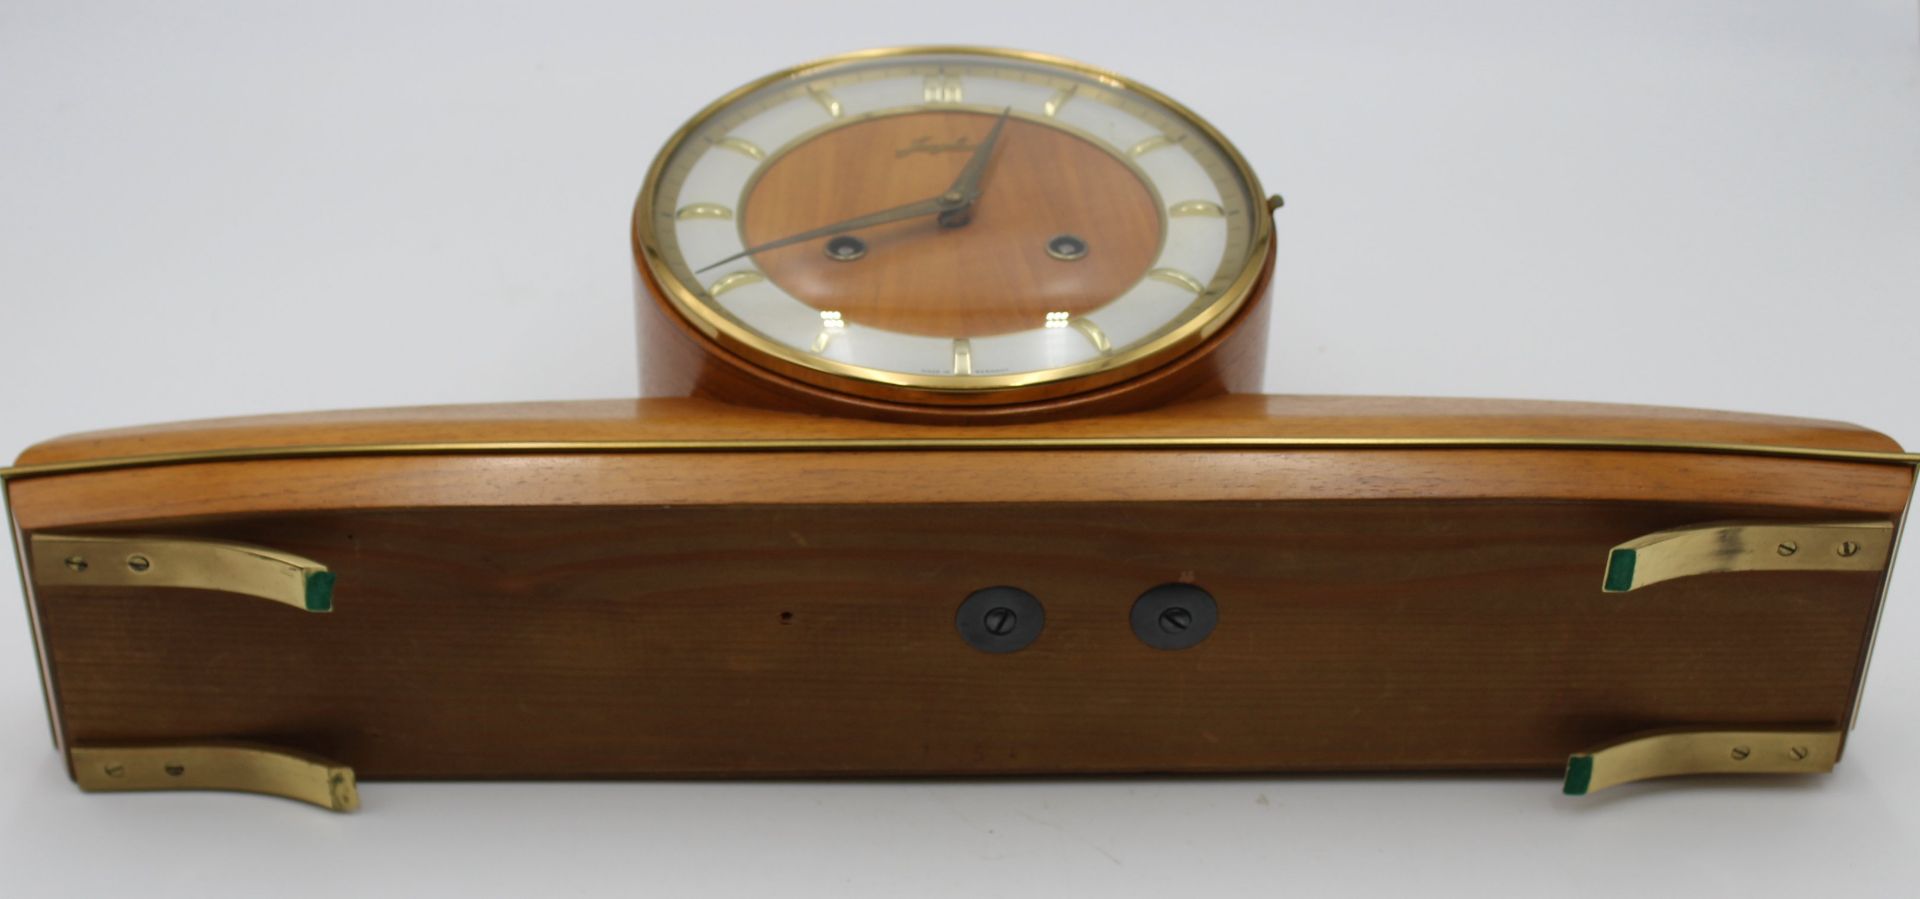 Buffet-Uhr, Junghans, 50er Jahre, Wer läuft, helles Holzgehäuse, H-22,5cm B-50cm T-11,5cm. - Bild 8 aus 8